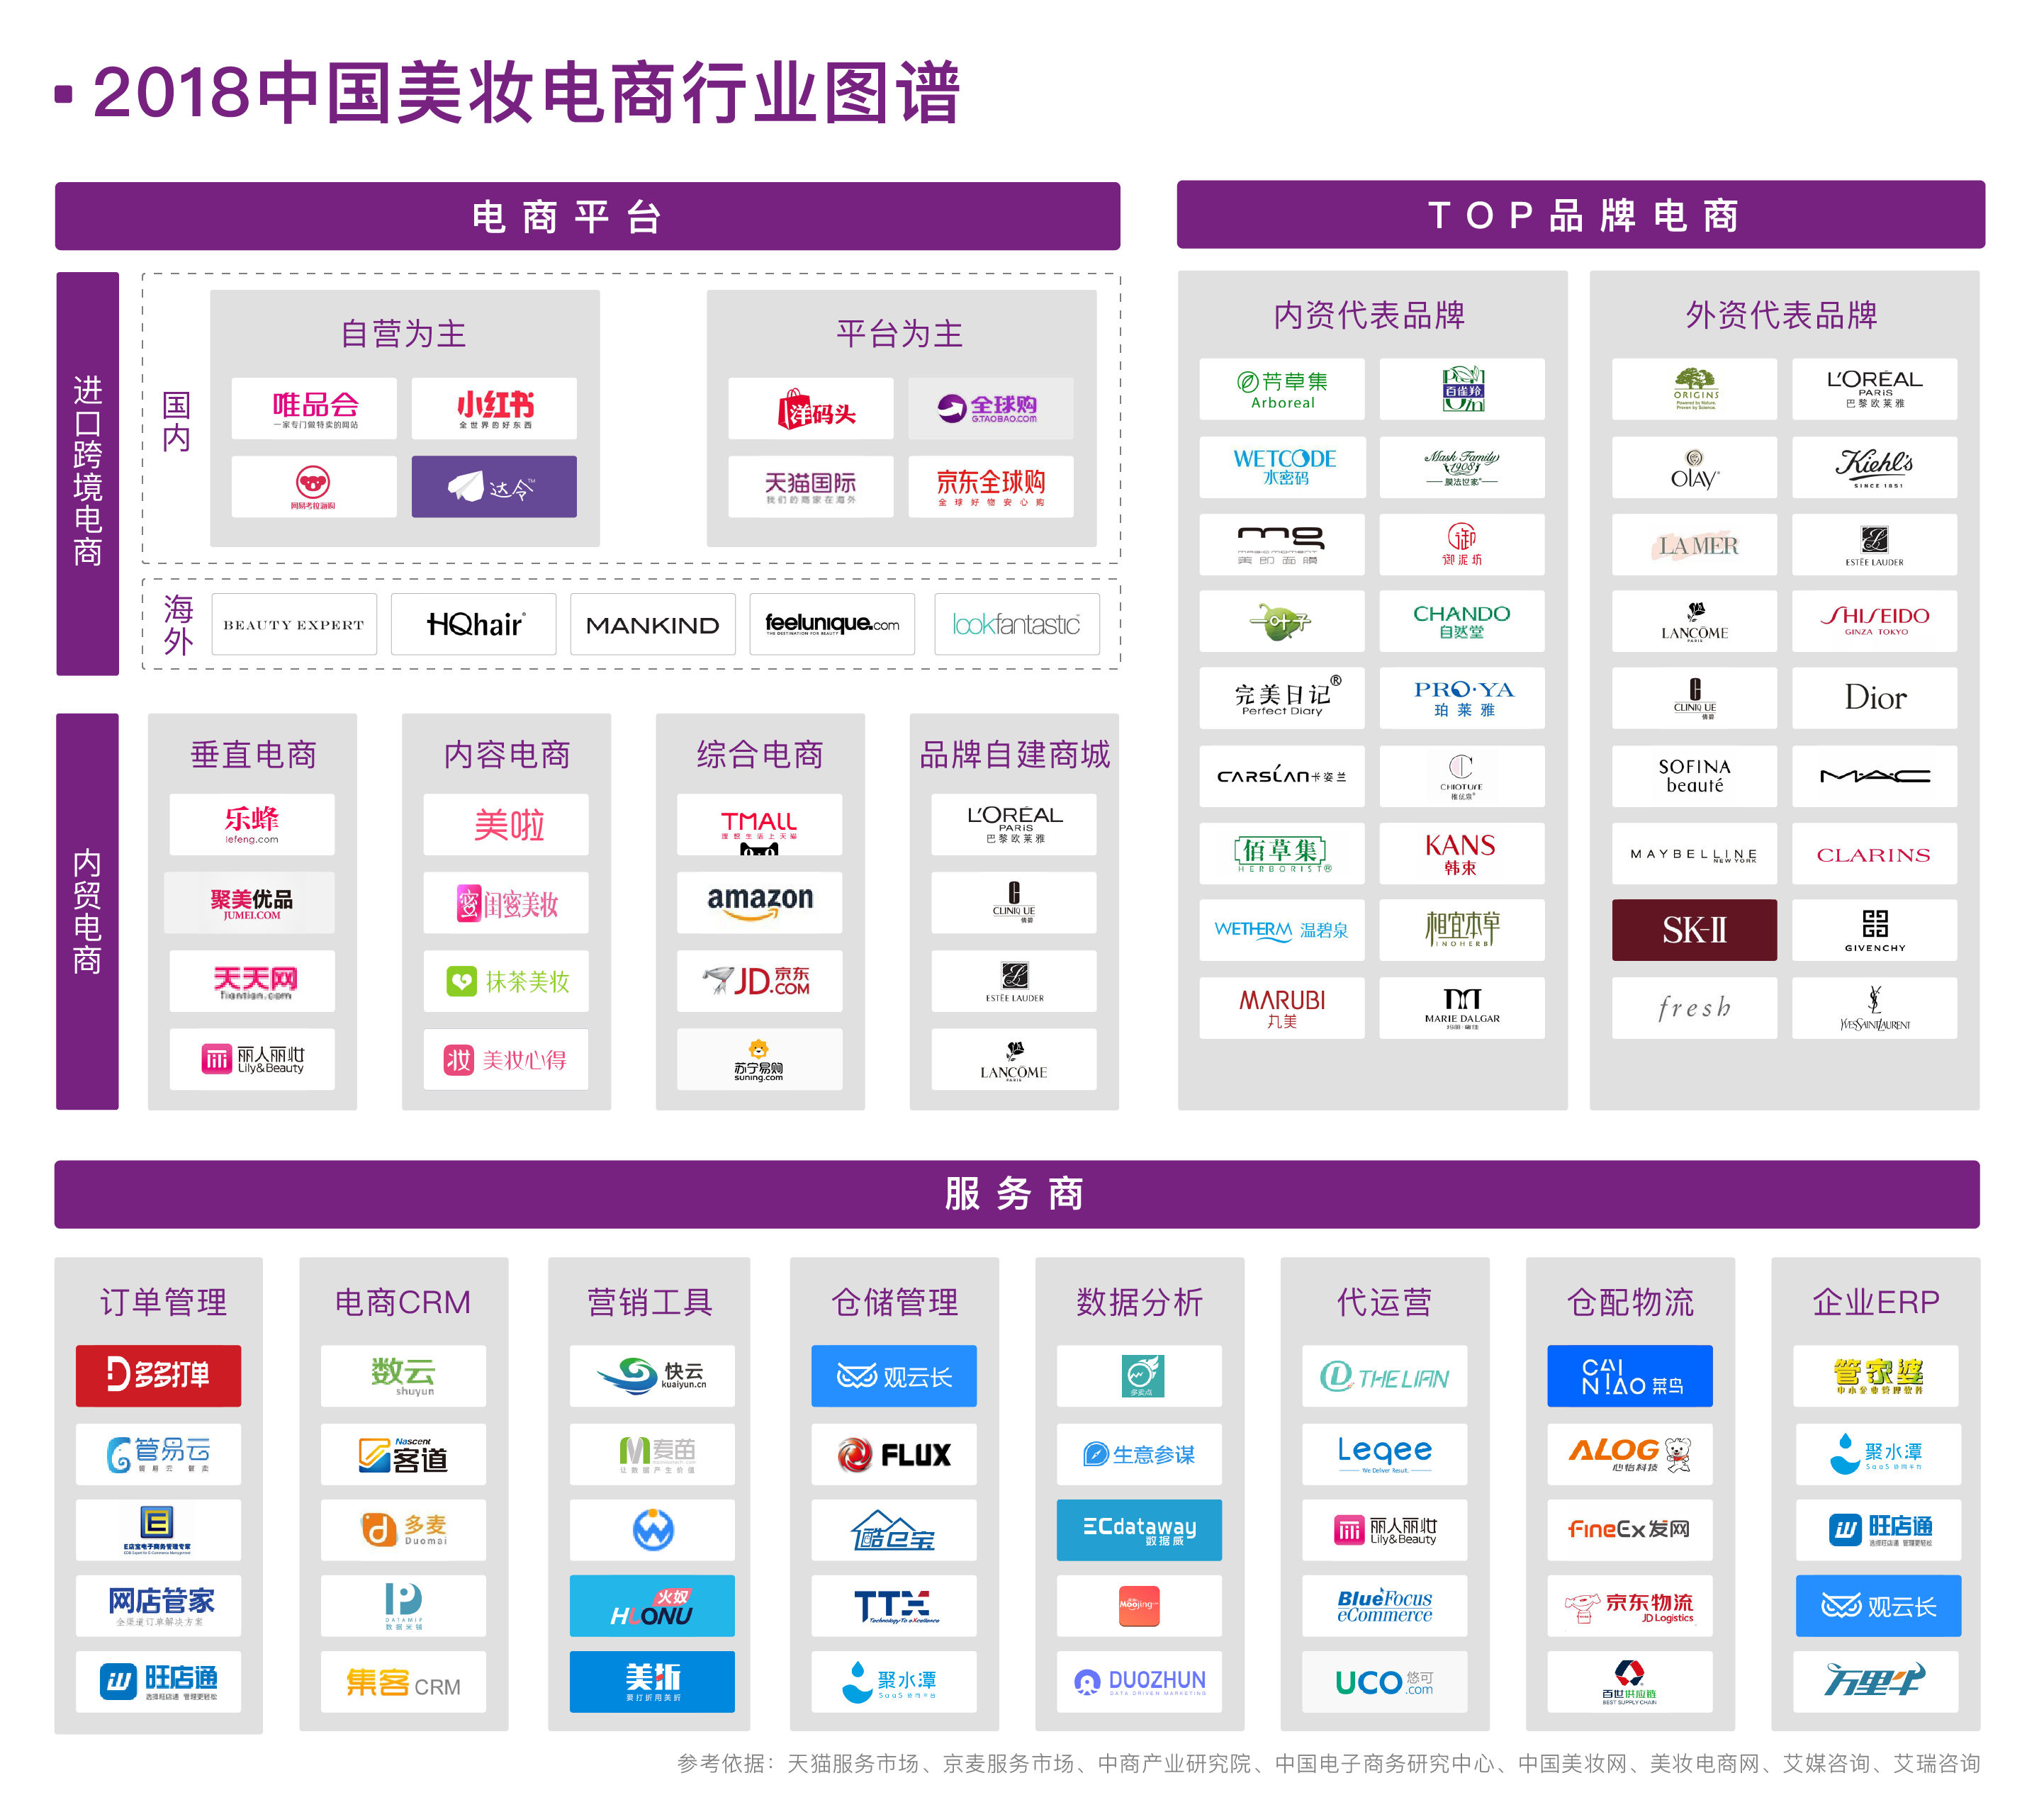 2018中国美妆电商行业图谱发布